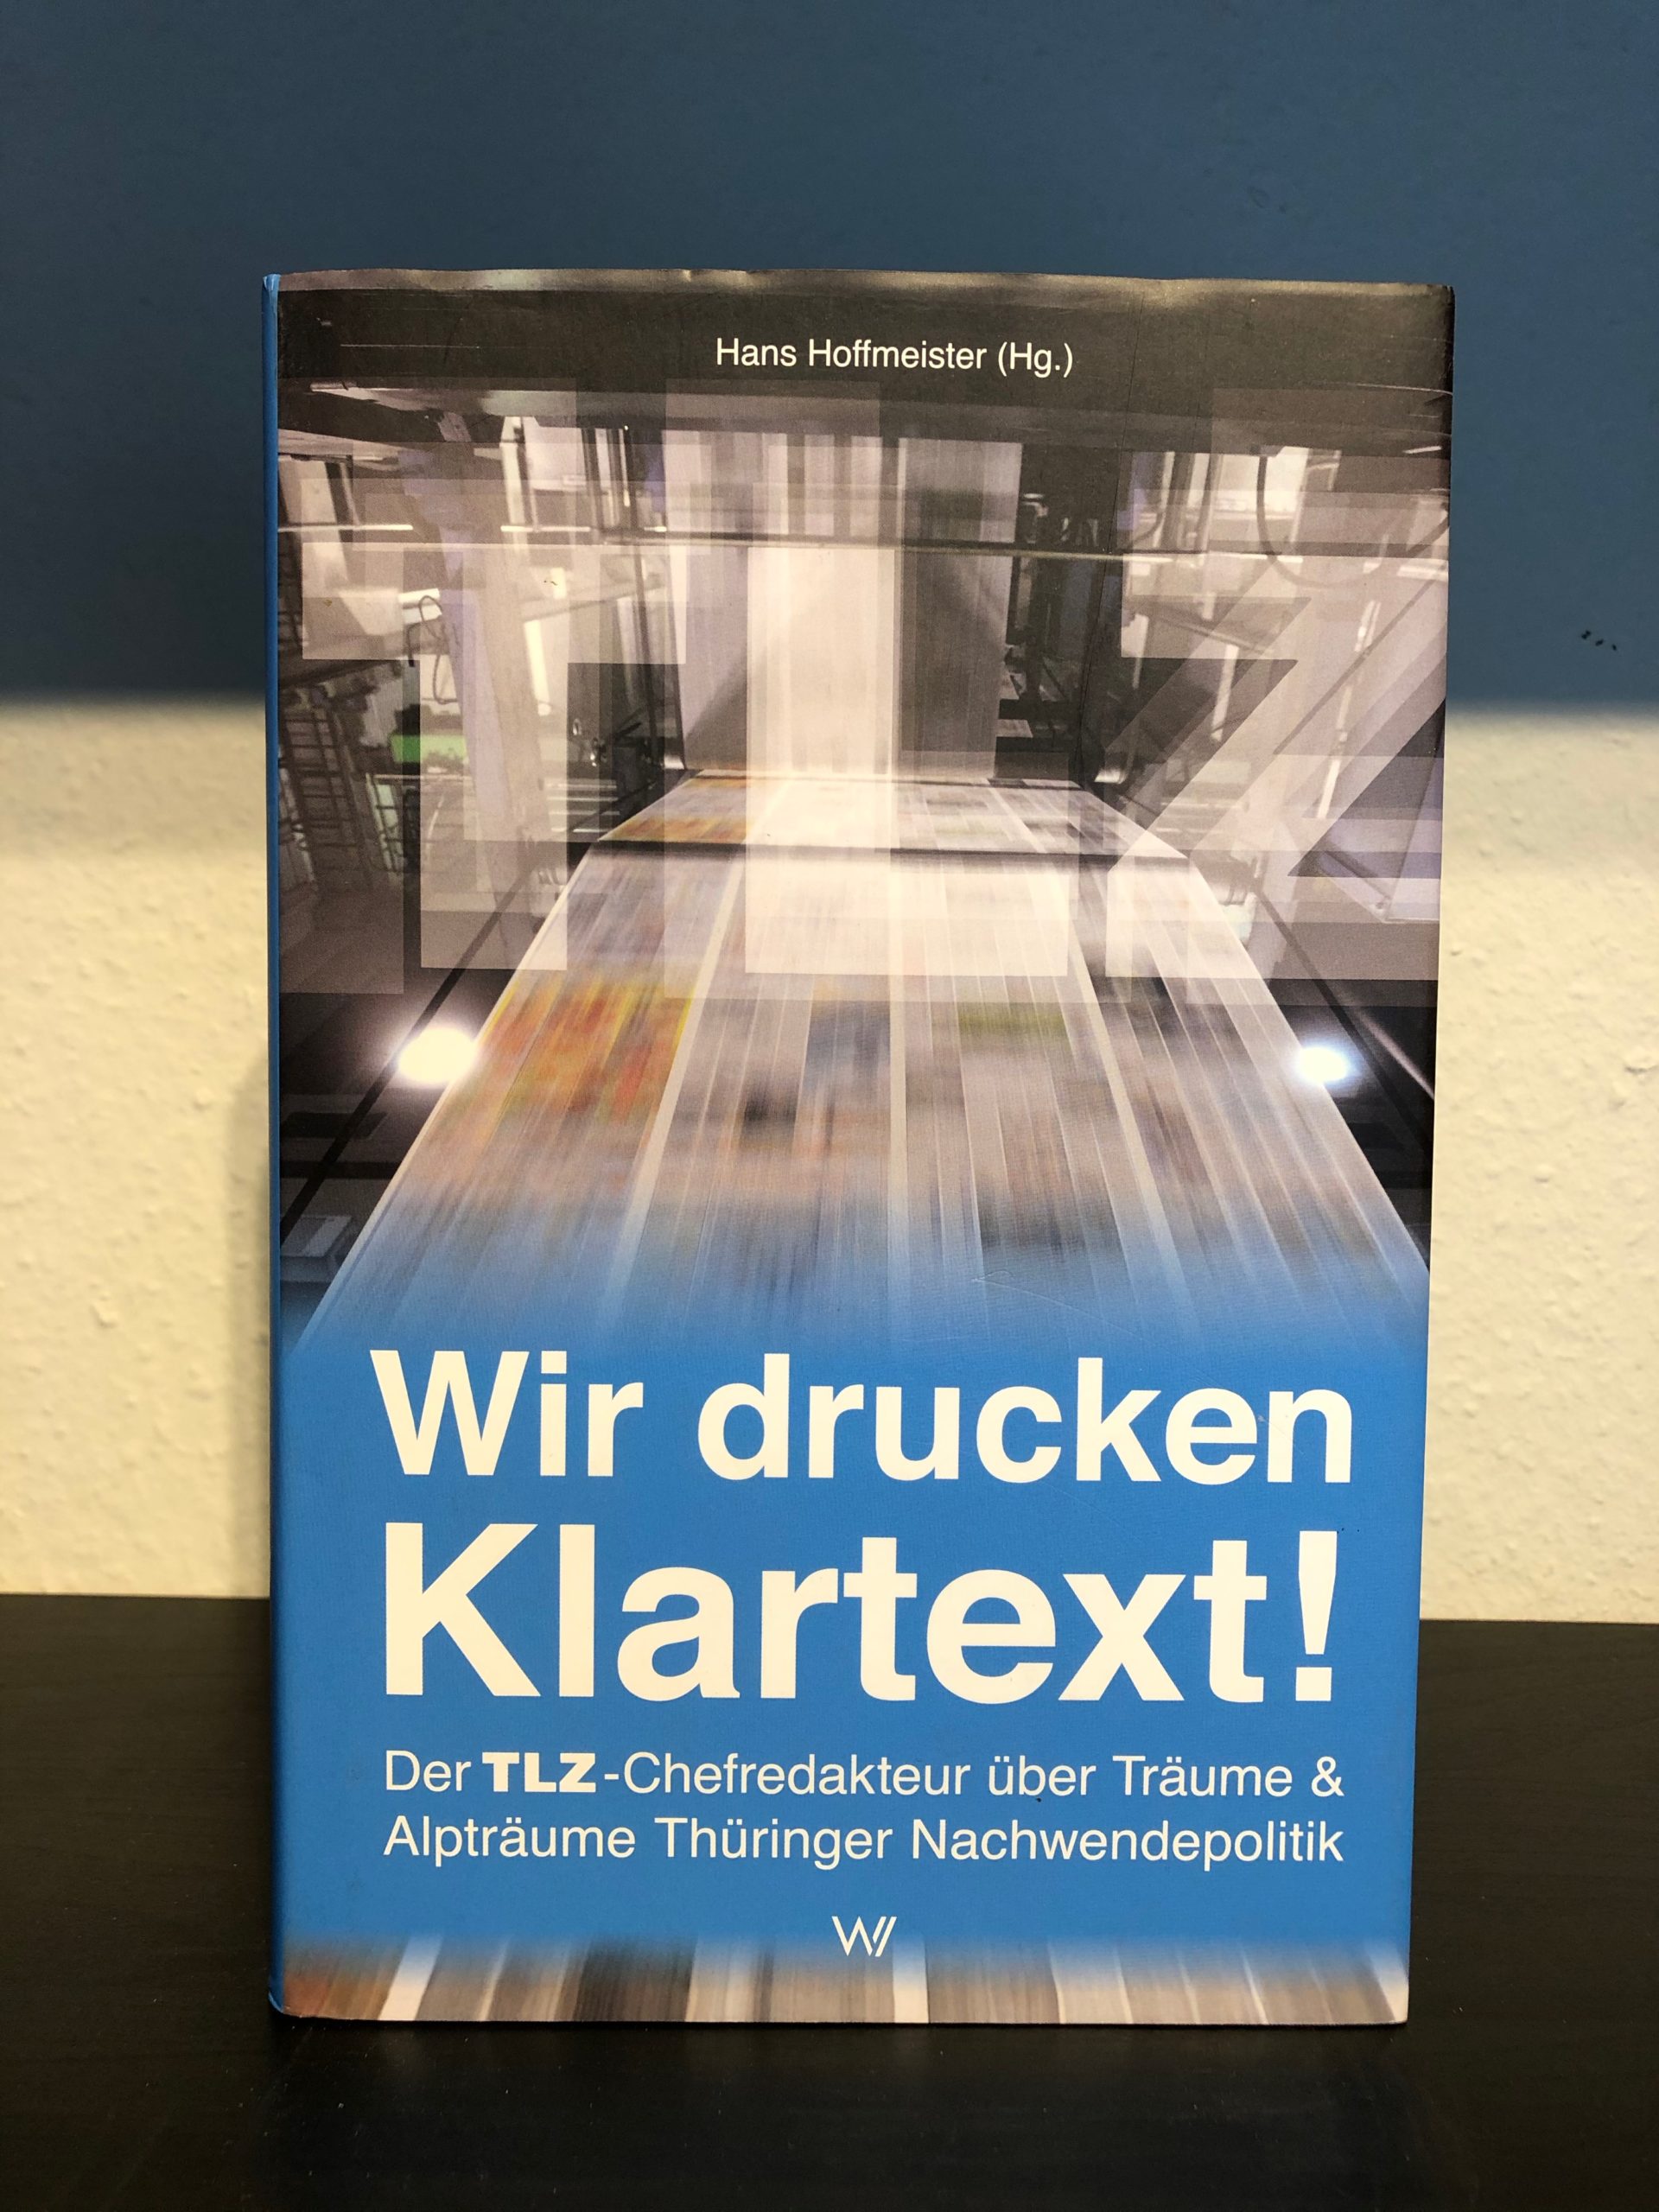 Wir drucken Klartext! - Der TLZ-Chefredakteur über Träume & Alpträume Thüringer Nachwendepolitik - Hans Hoffmeister